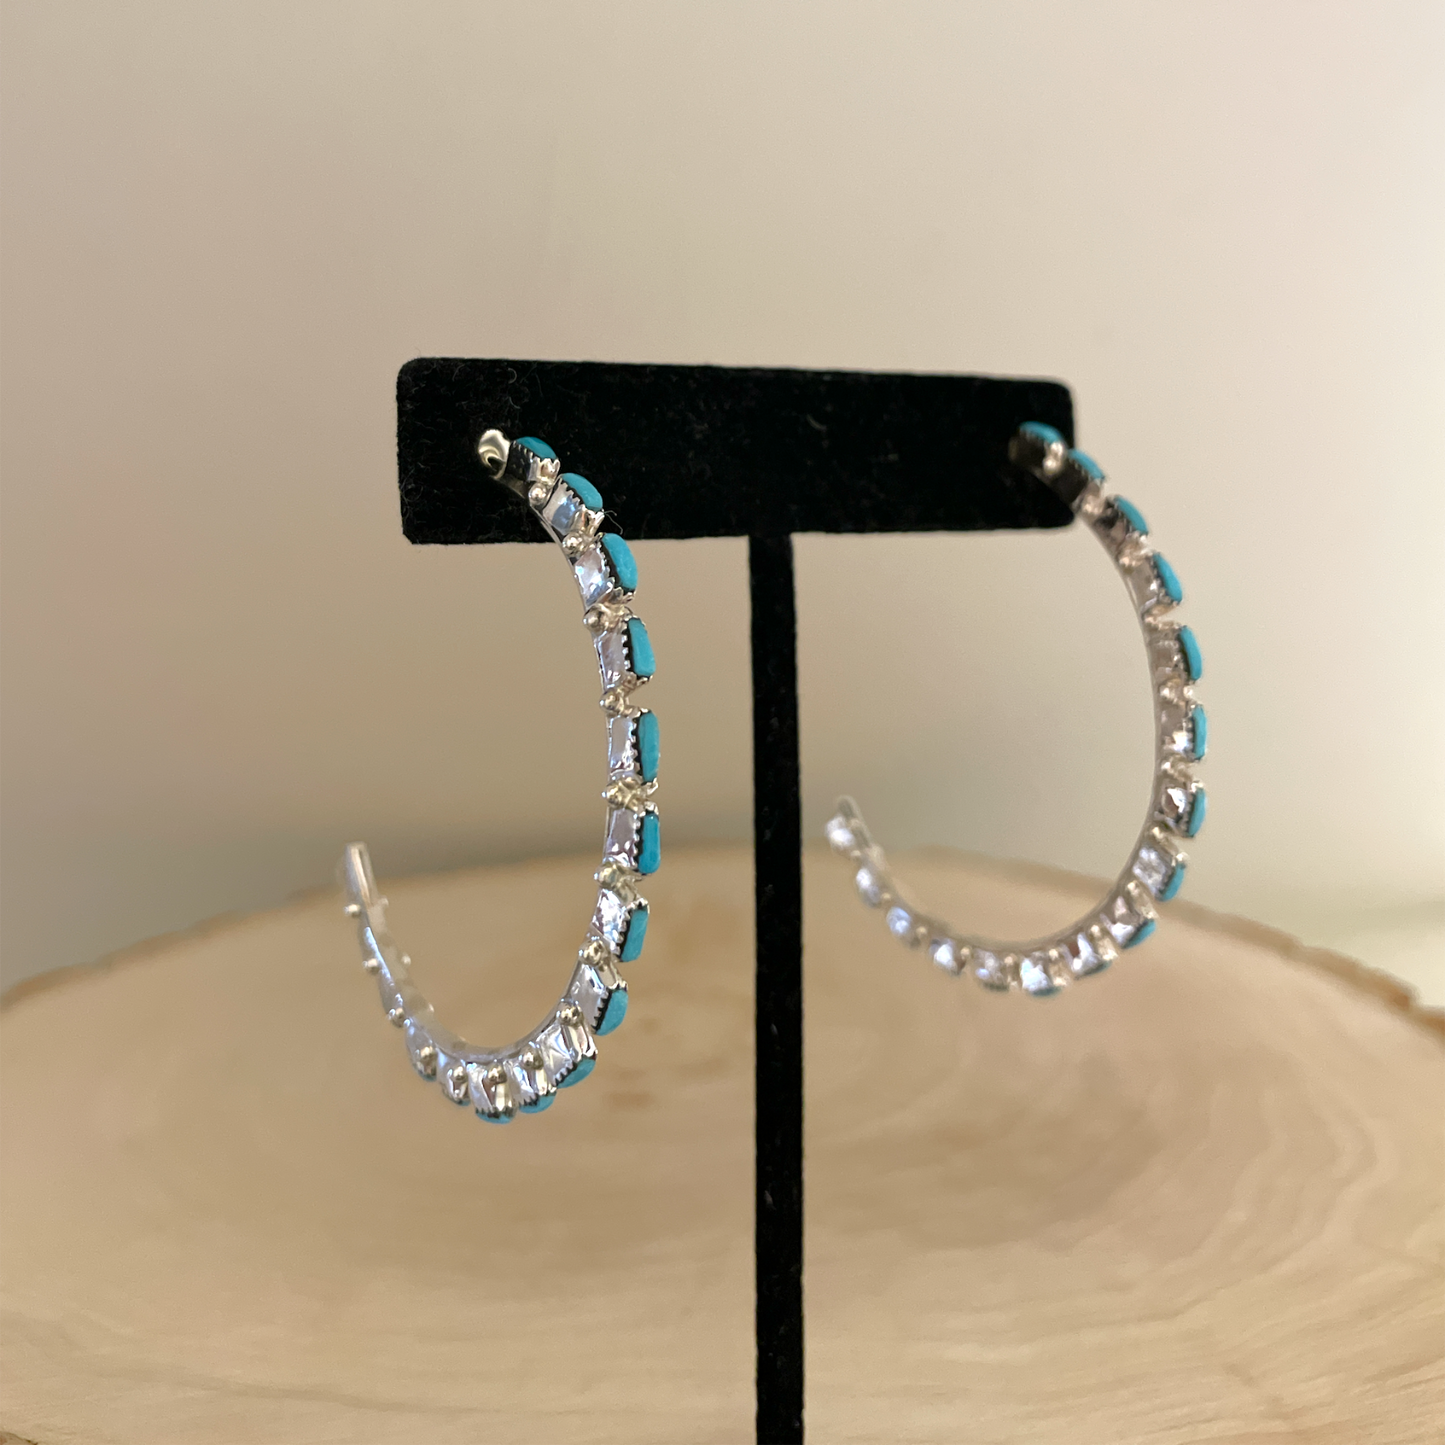 Needlepoint Turquoise Hoop Earrings 2"